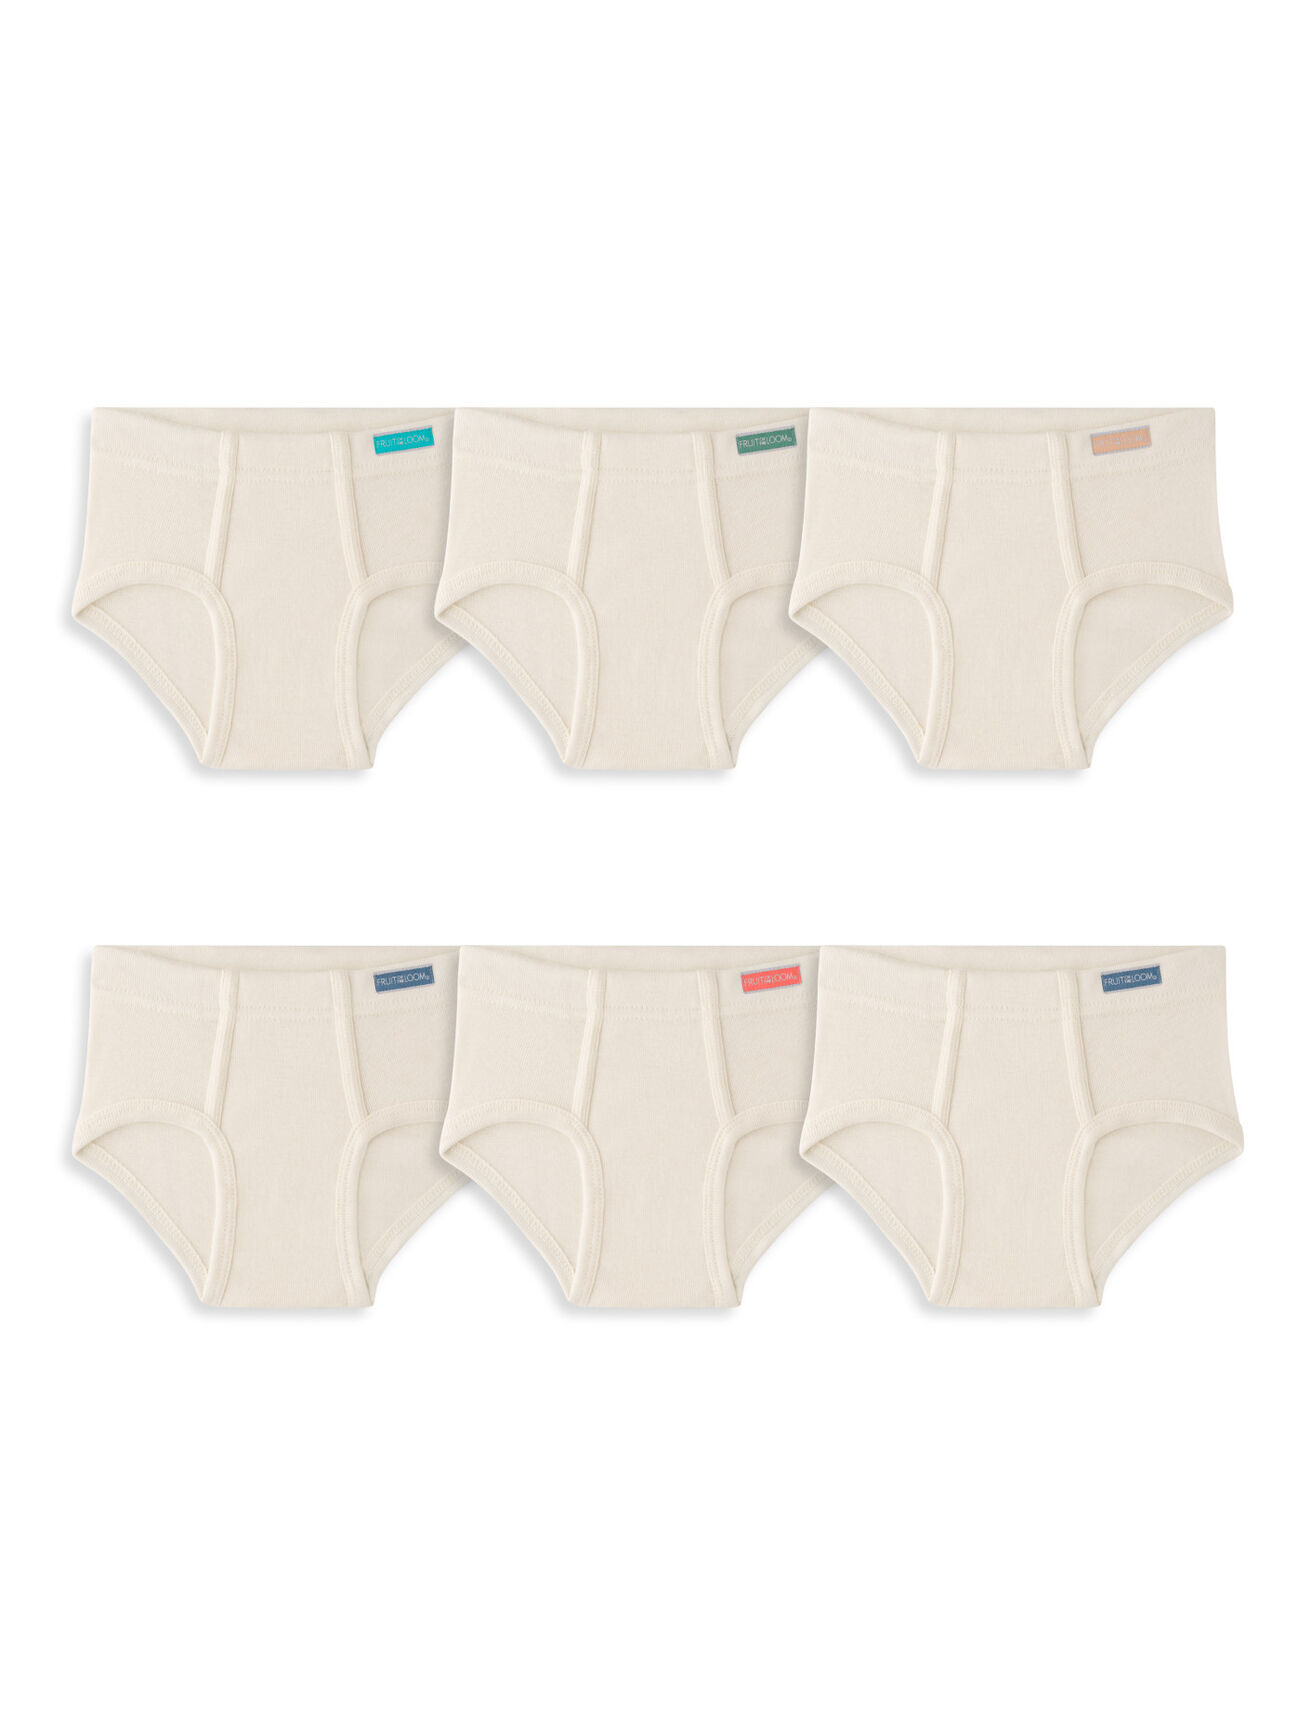 Big Boys' Underwear Briefs Soft 100% Cotton 6-Pack Kids Underwear Toddler  Undies